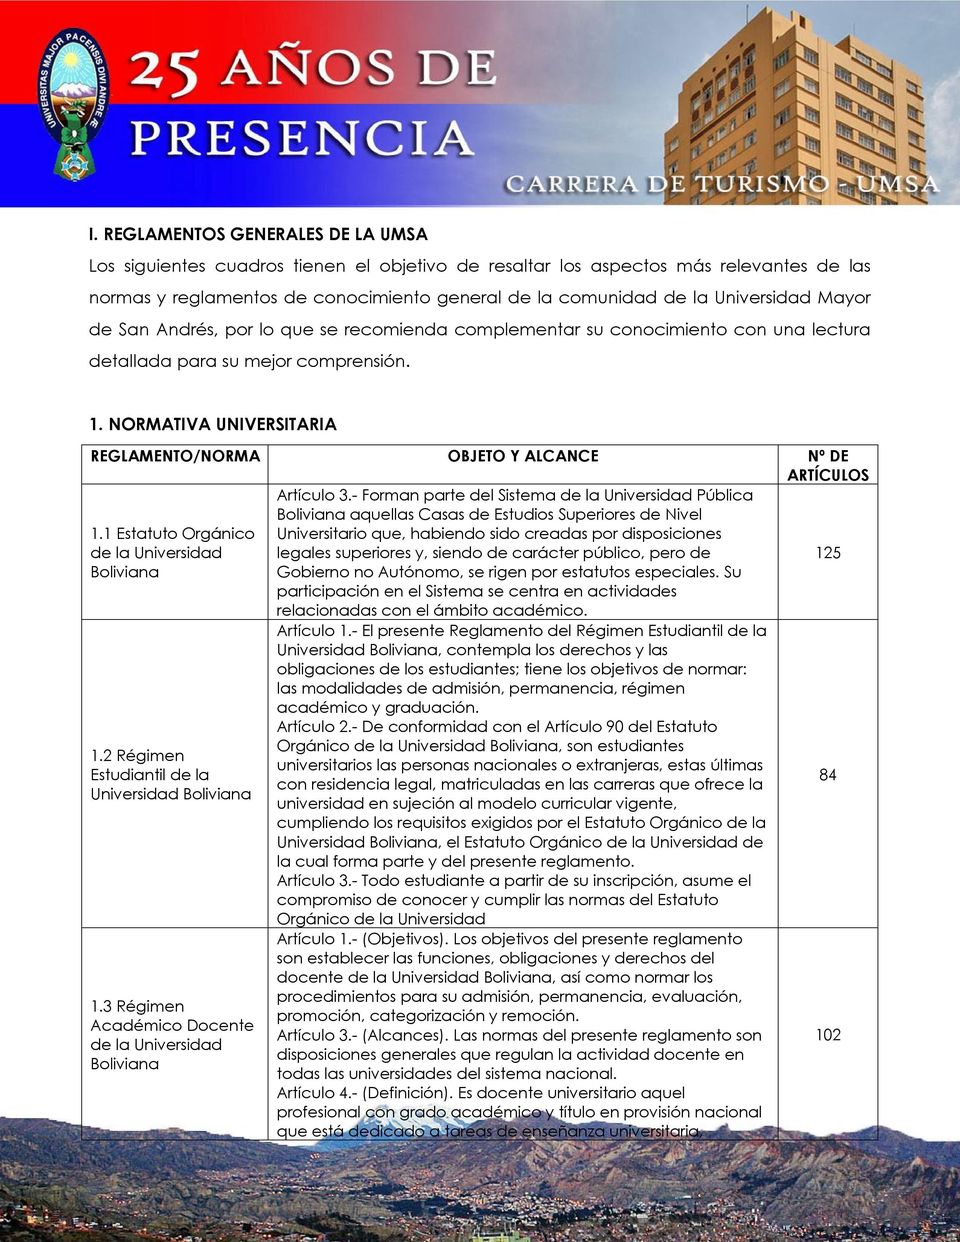 NORMATIVA UNIVERSITARIA REGLAMENTO/NORMA OBJETO Y ALCANCE Nº DE ARTÍCULOS 1.1 Estatuto Orgánico de la Universidad Boliviana Artículo 3.